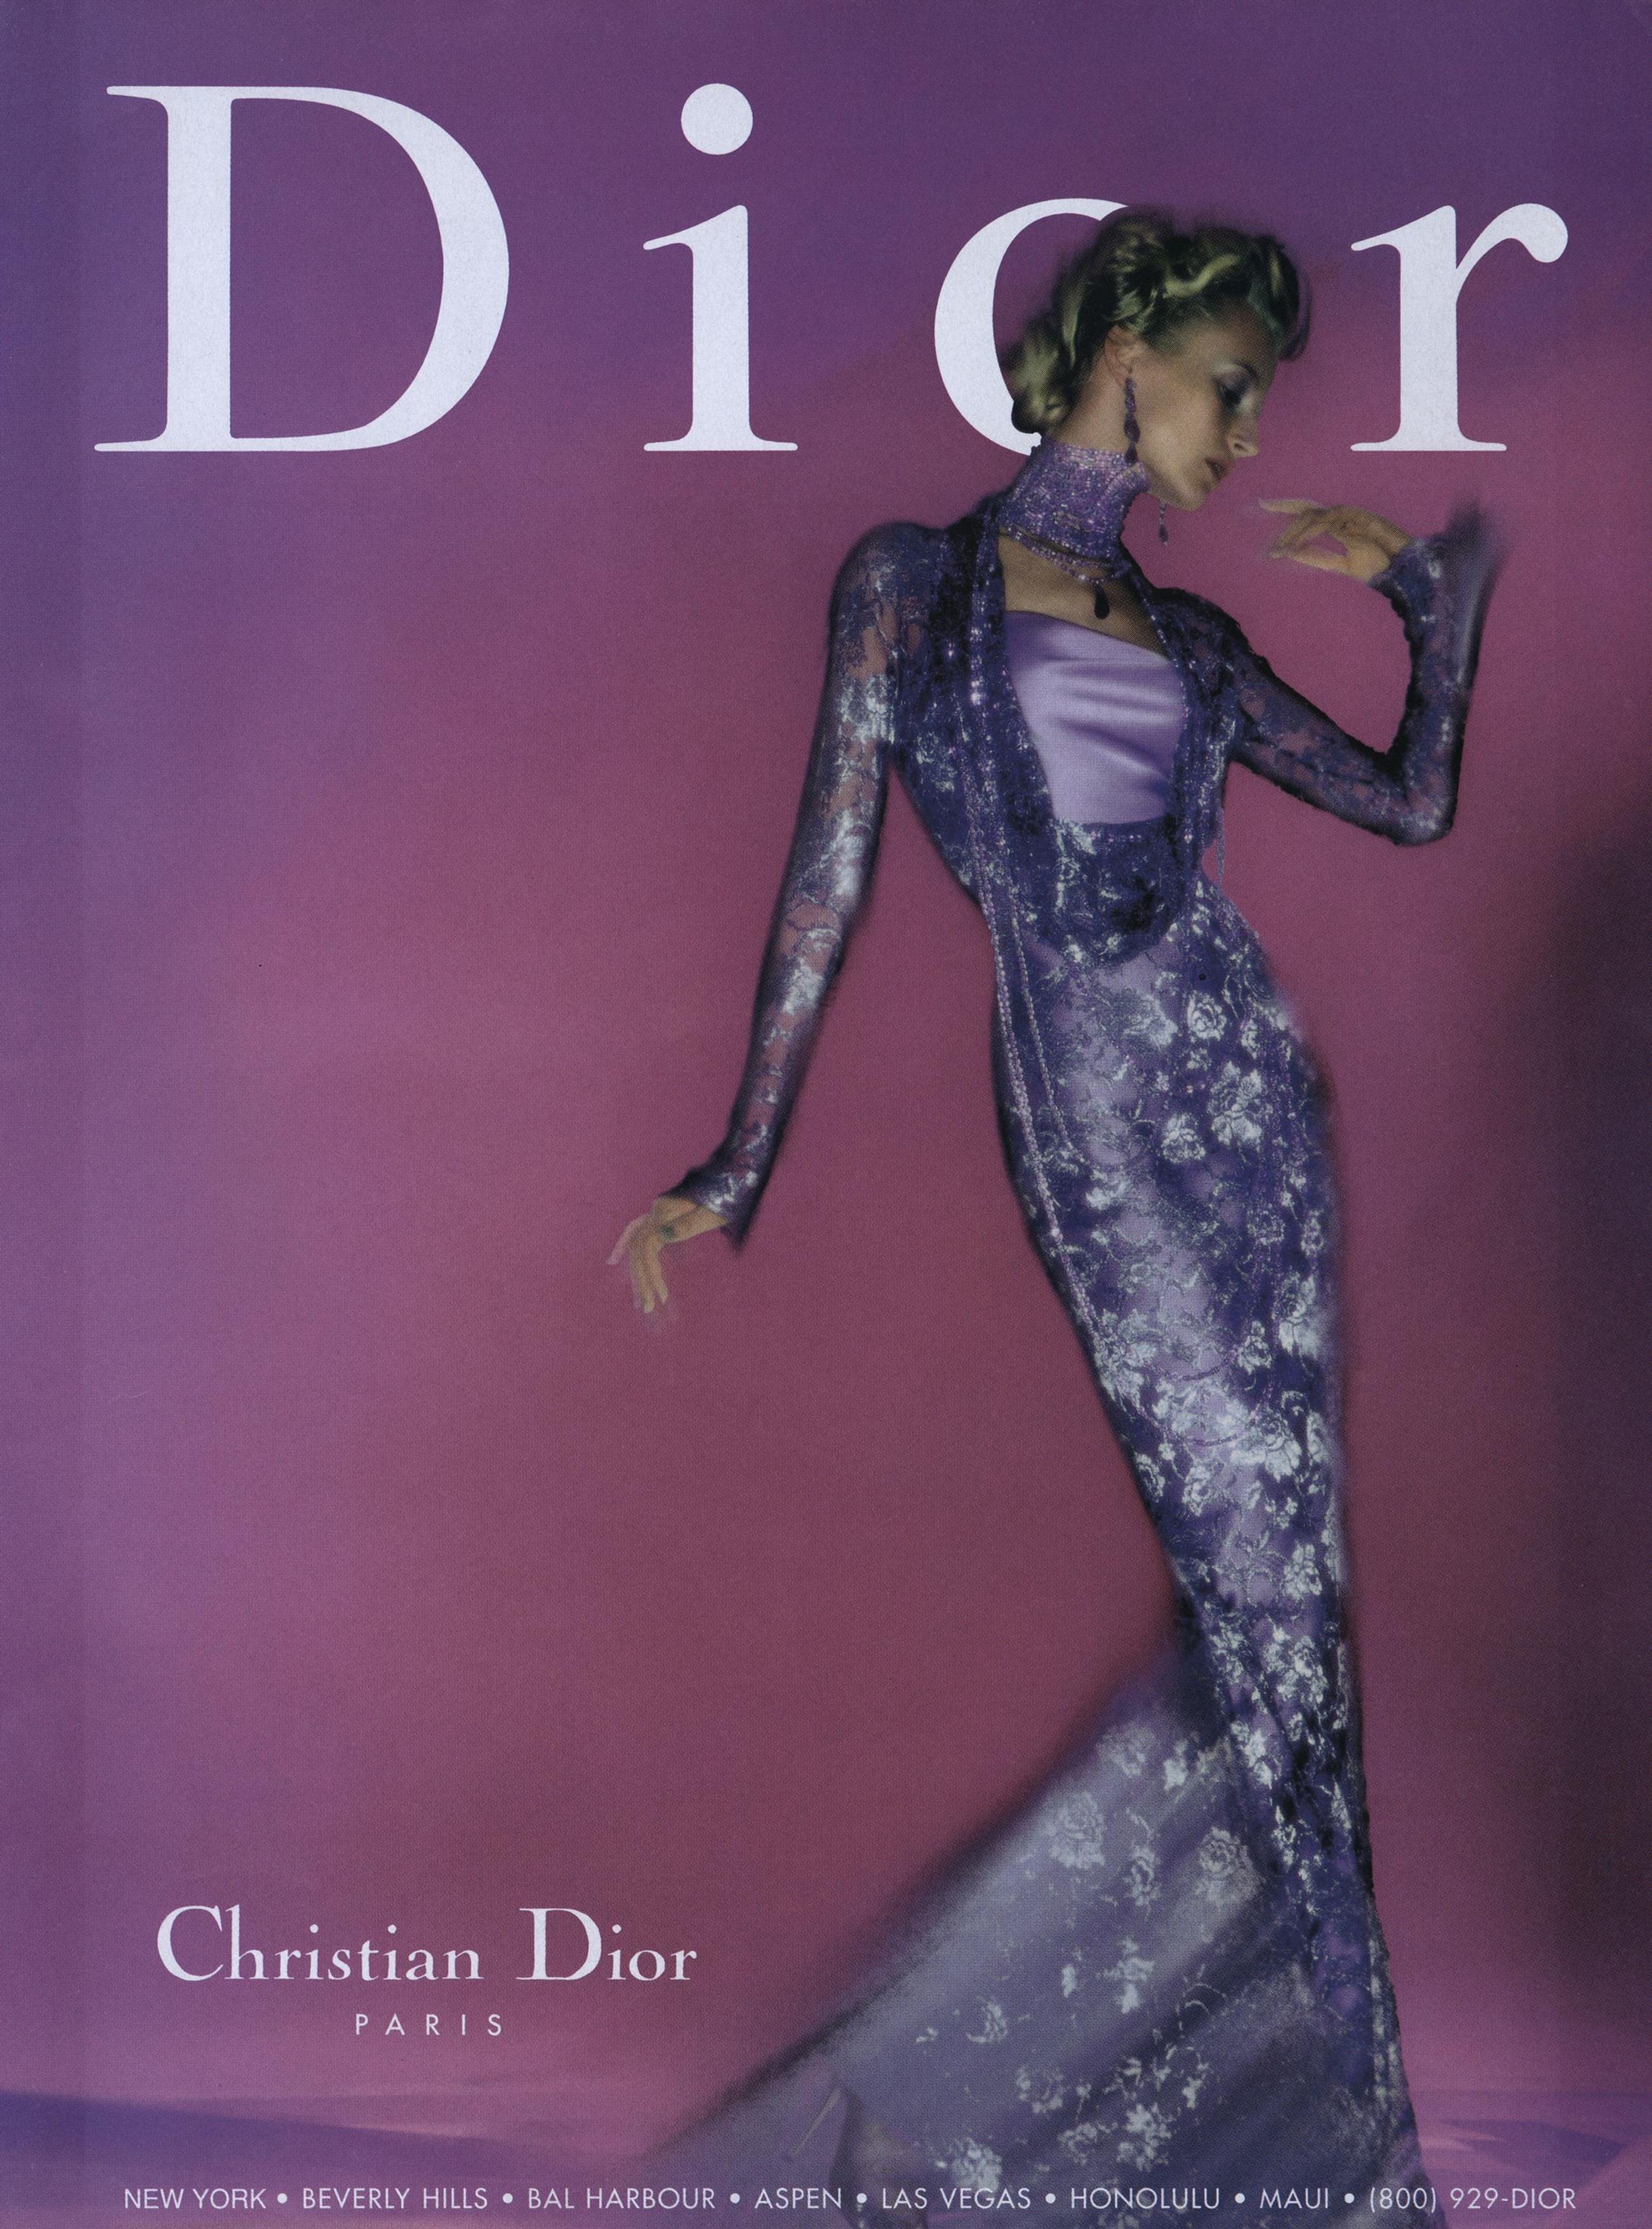 Christian Dior - The Fashiongton Post